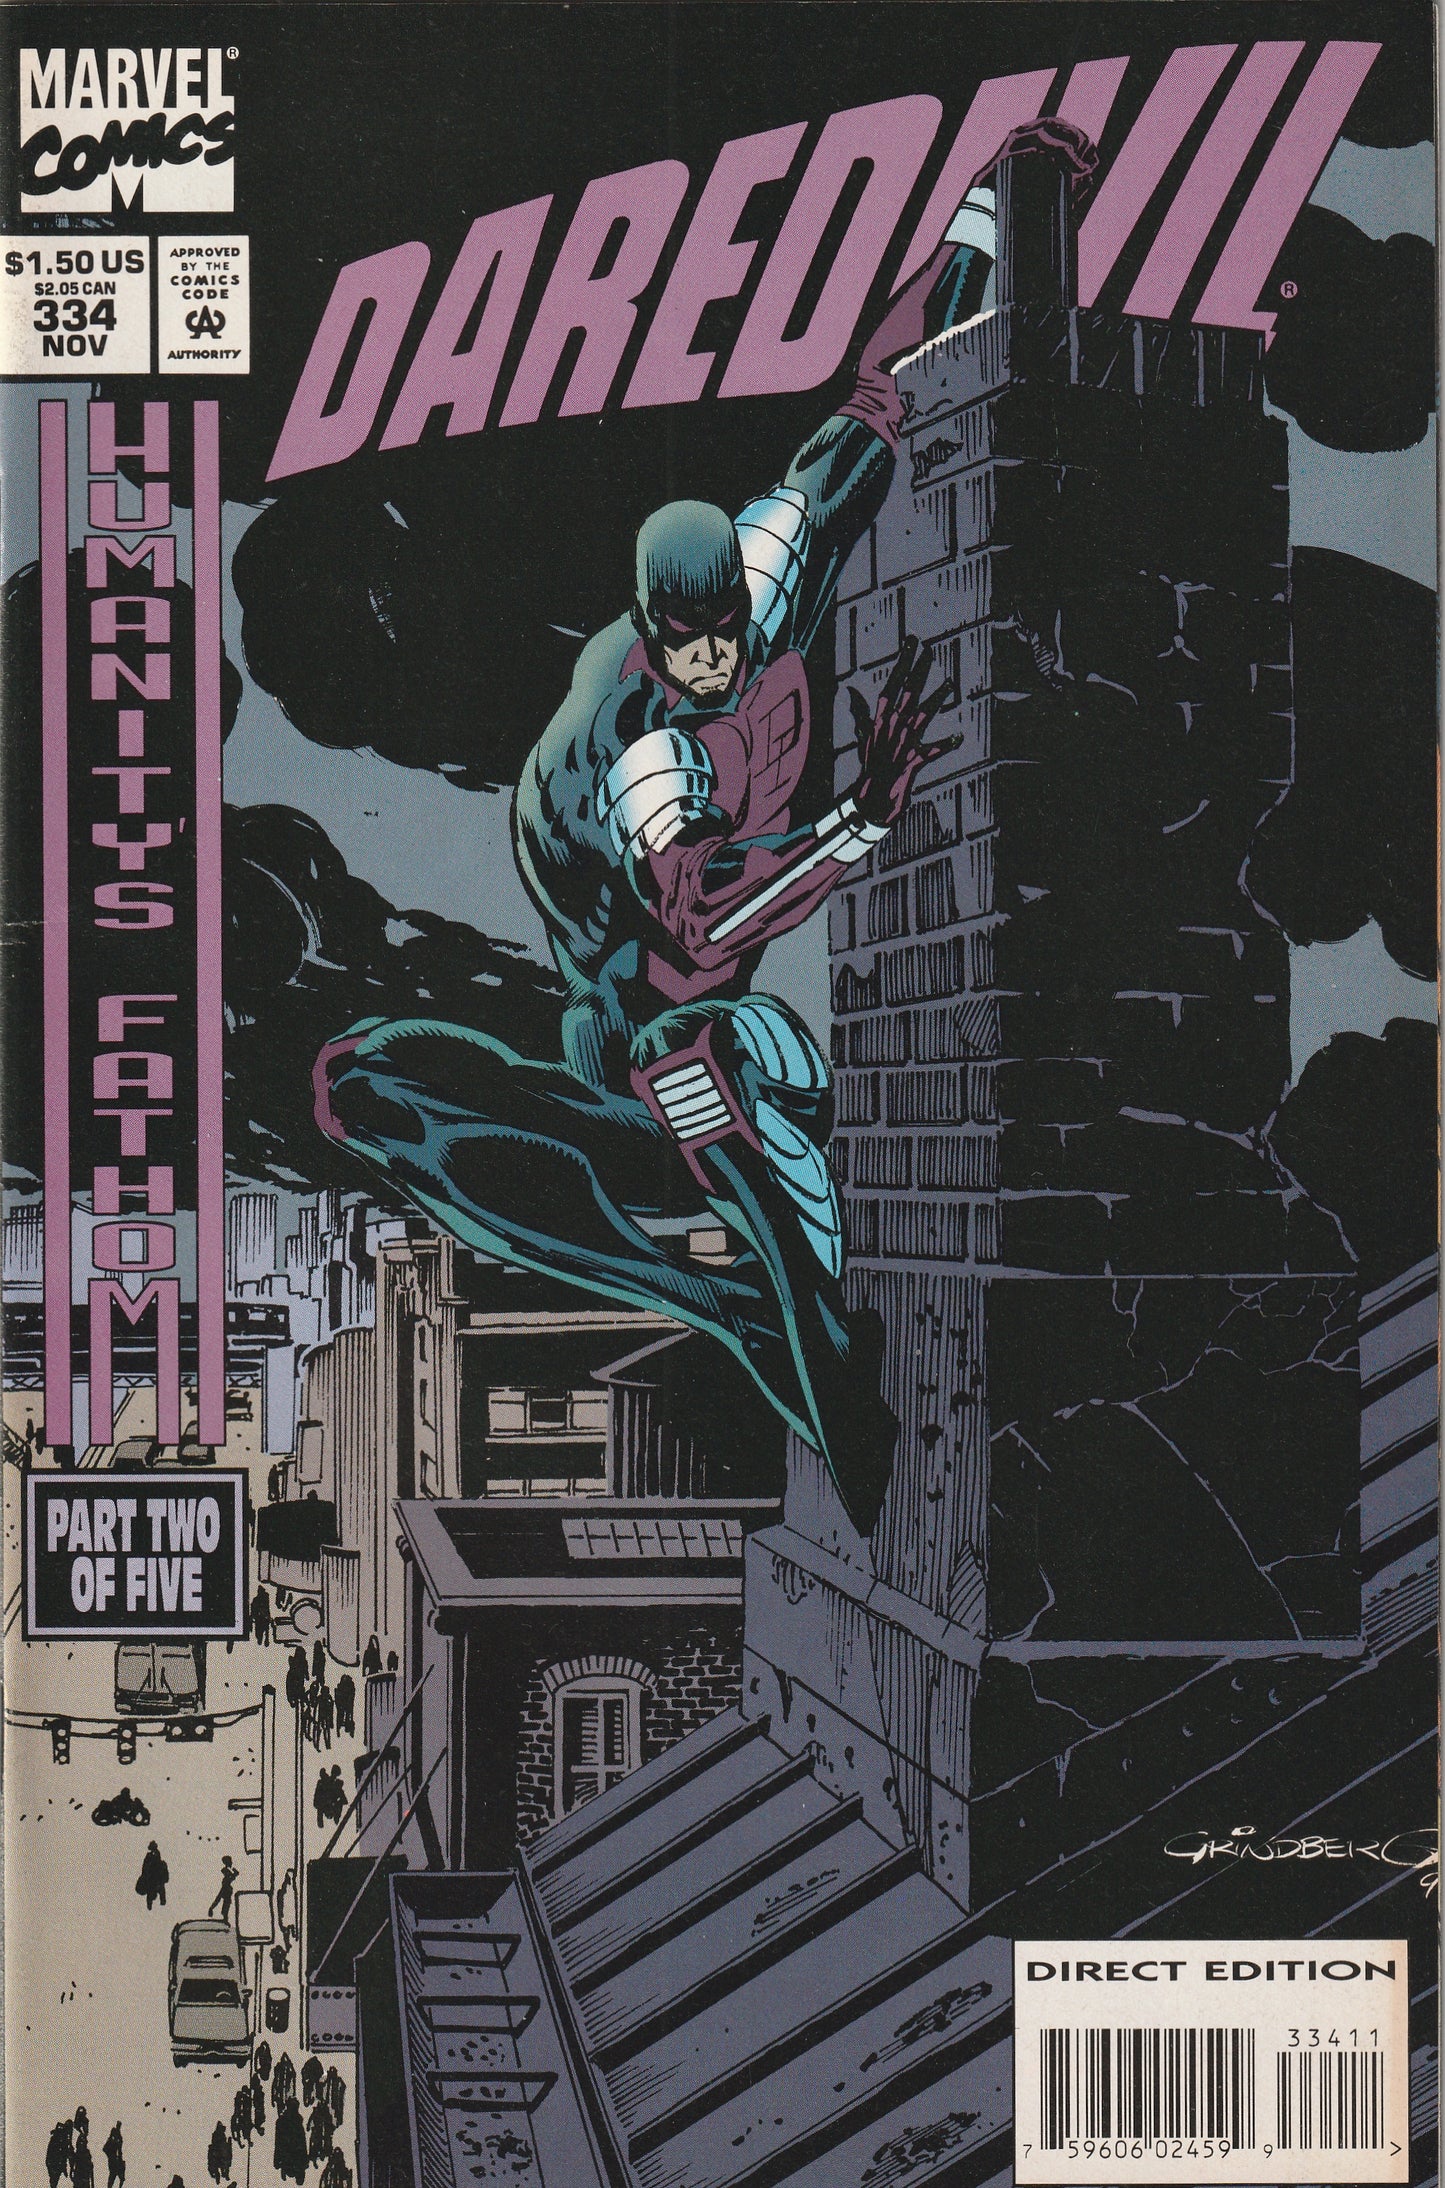 Daredevil #334 (1994)